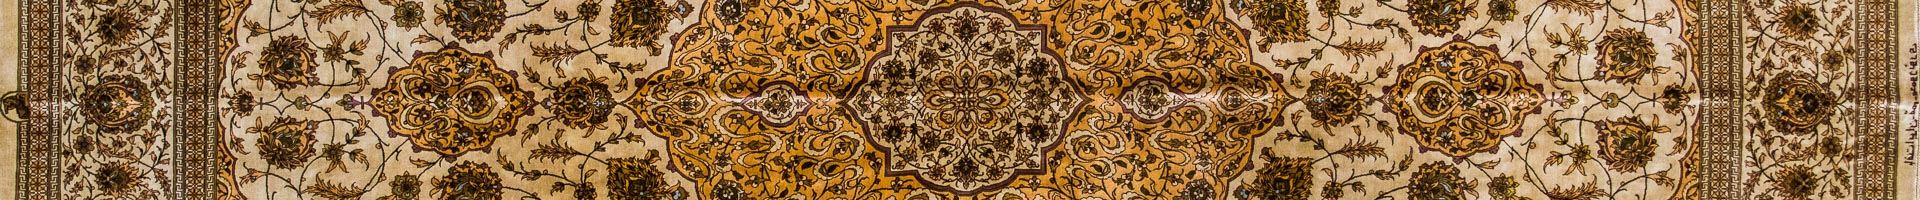 Silk Qom Persian Carpet Rug N1Carpet Montreal Canada Tapis Persan